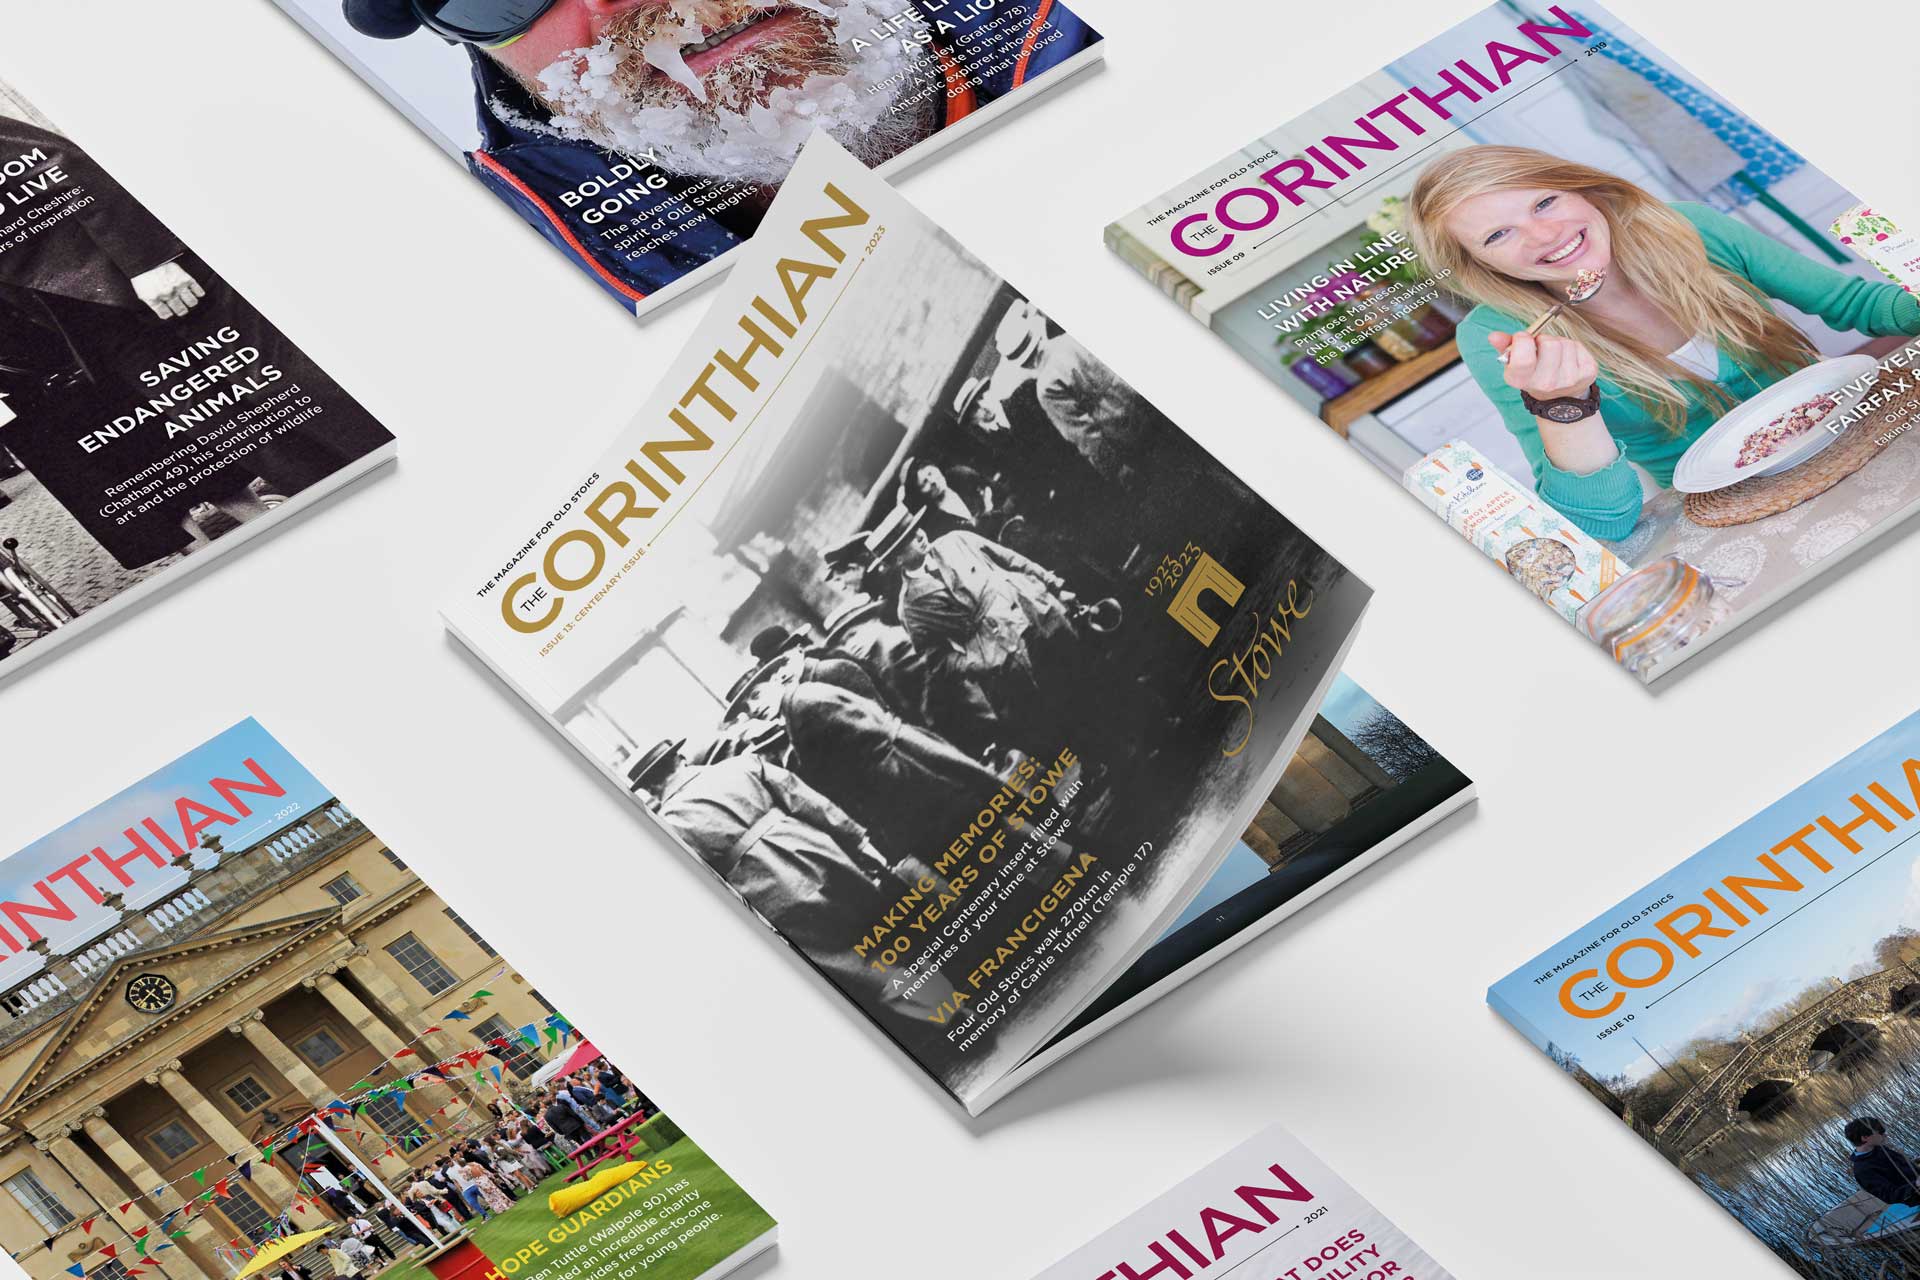 Corinthian Magazinecovers